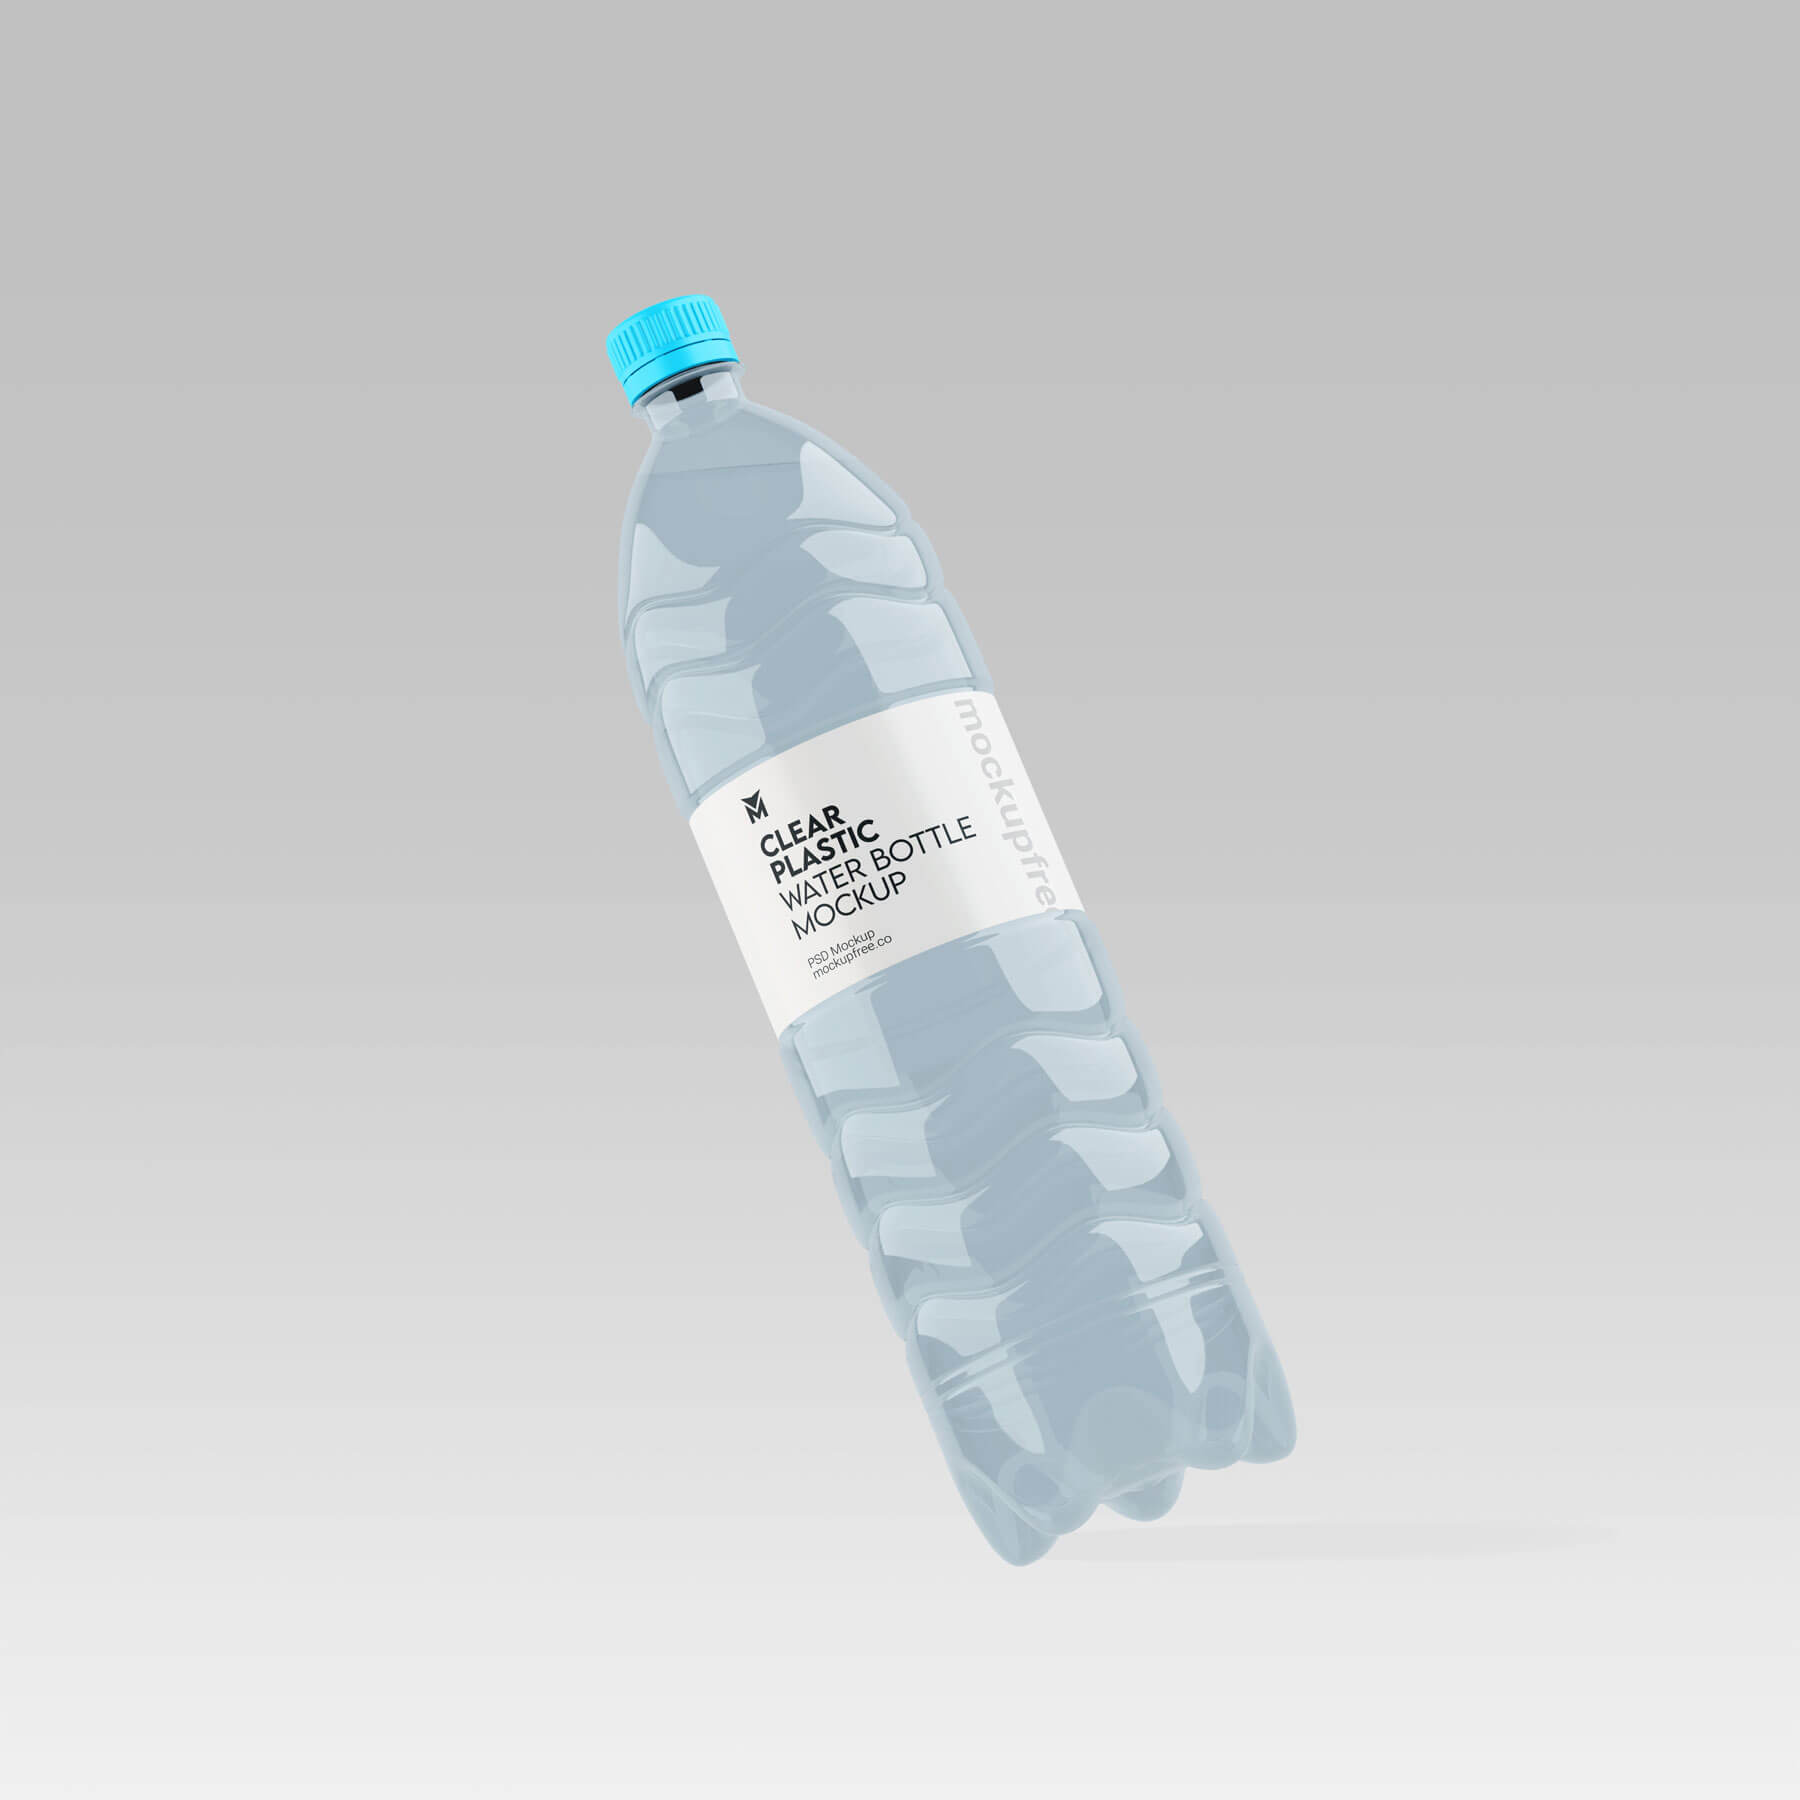 Clear Plastic Water Bottle Mockup 03